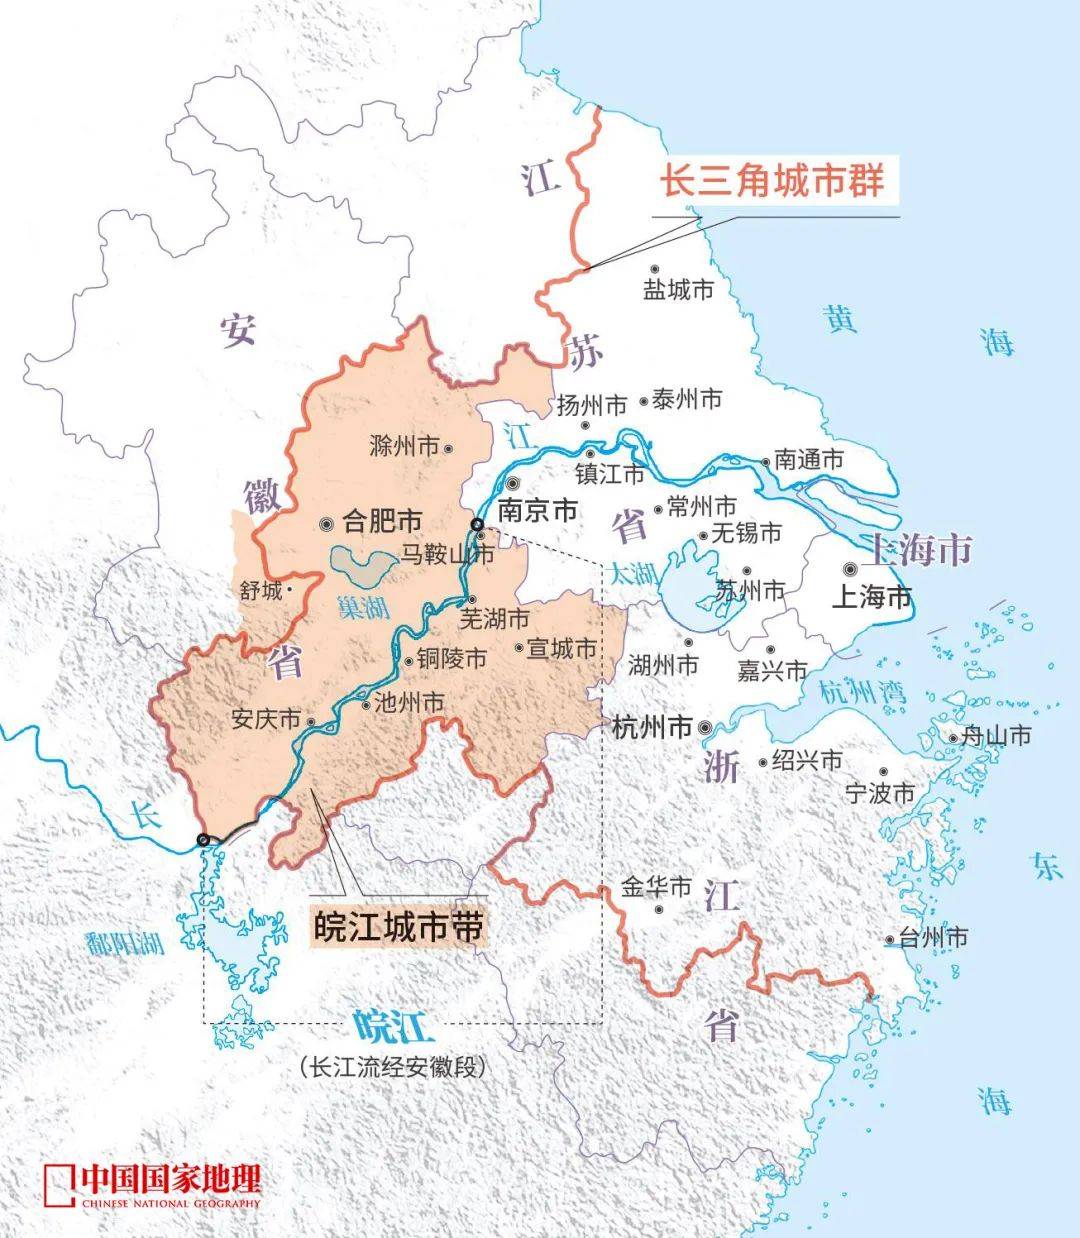 湘江沿线资源  发展潜力巨大  湖北武汉是长江中游重要的国家中心城市